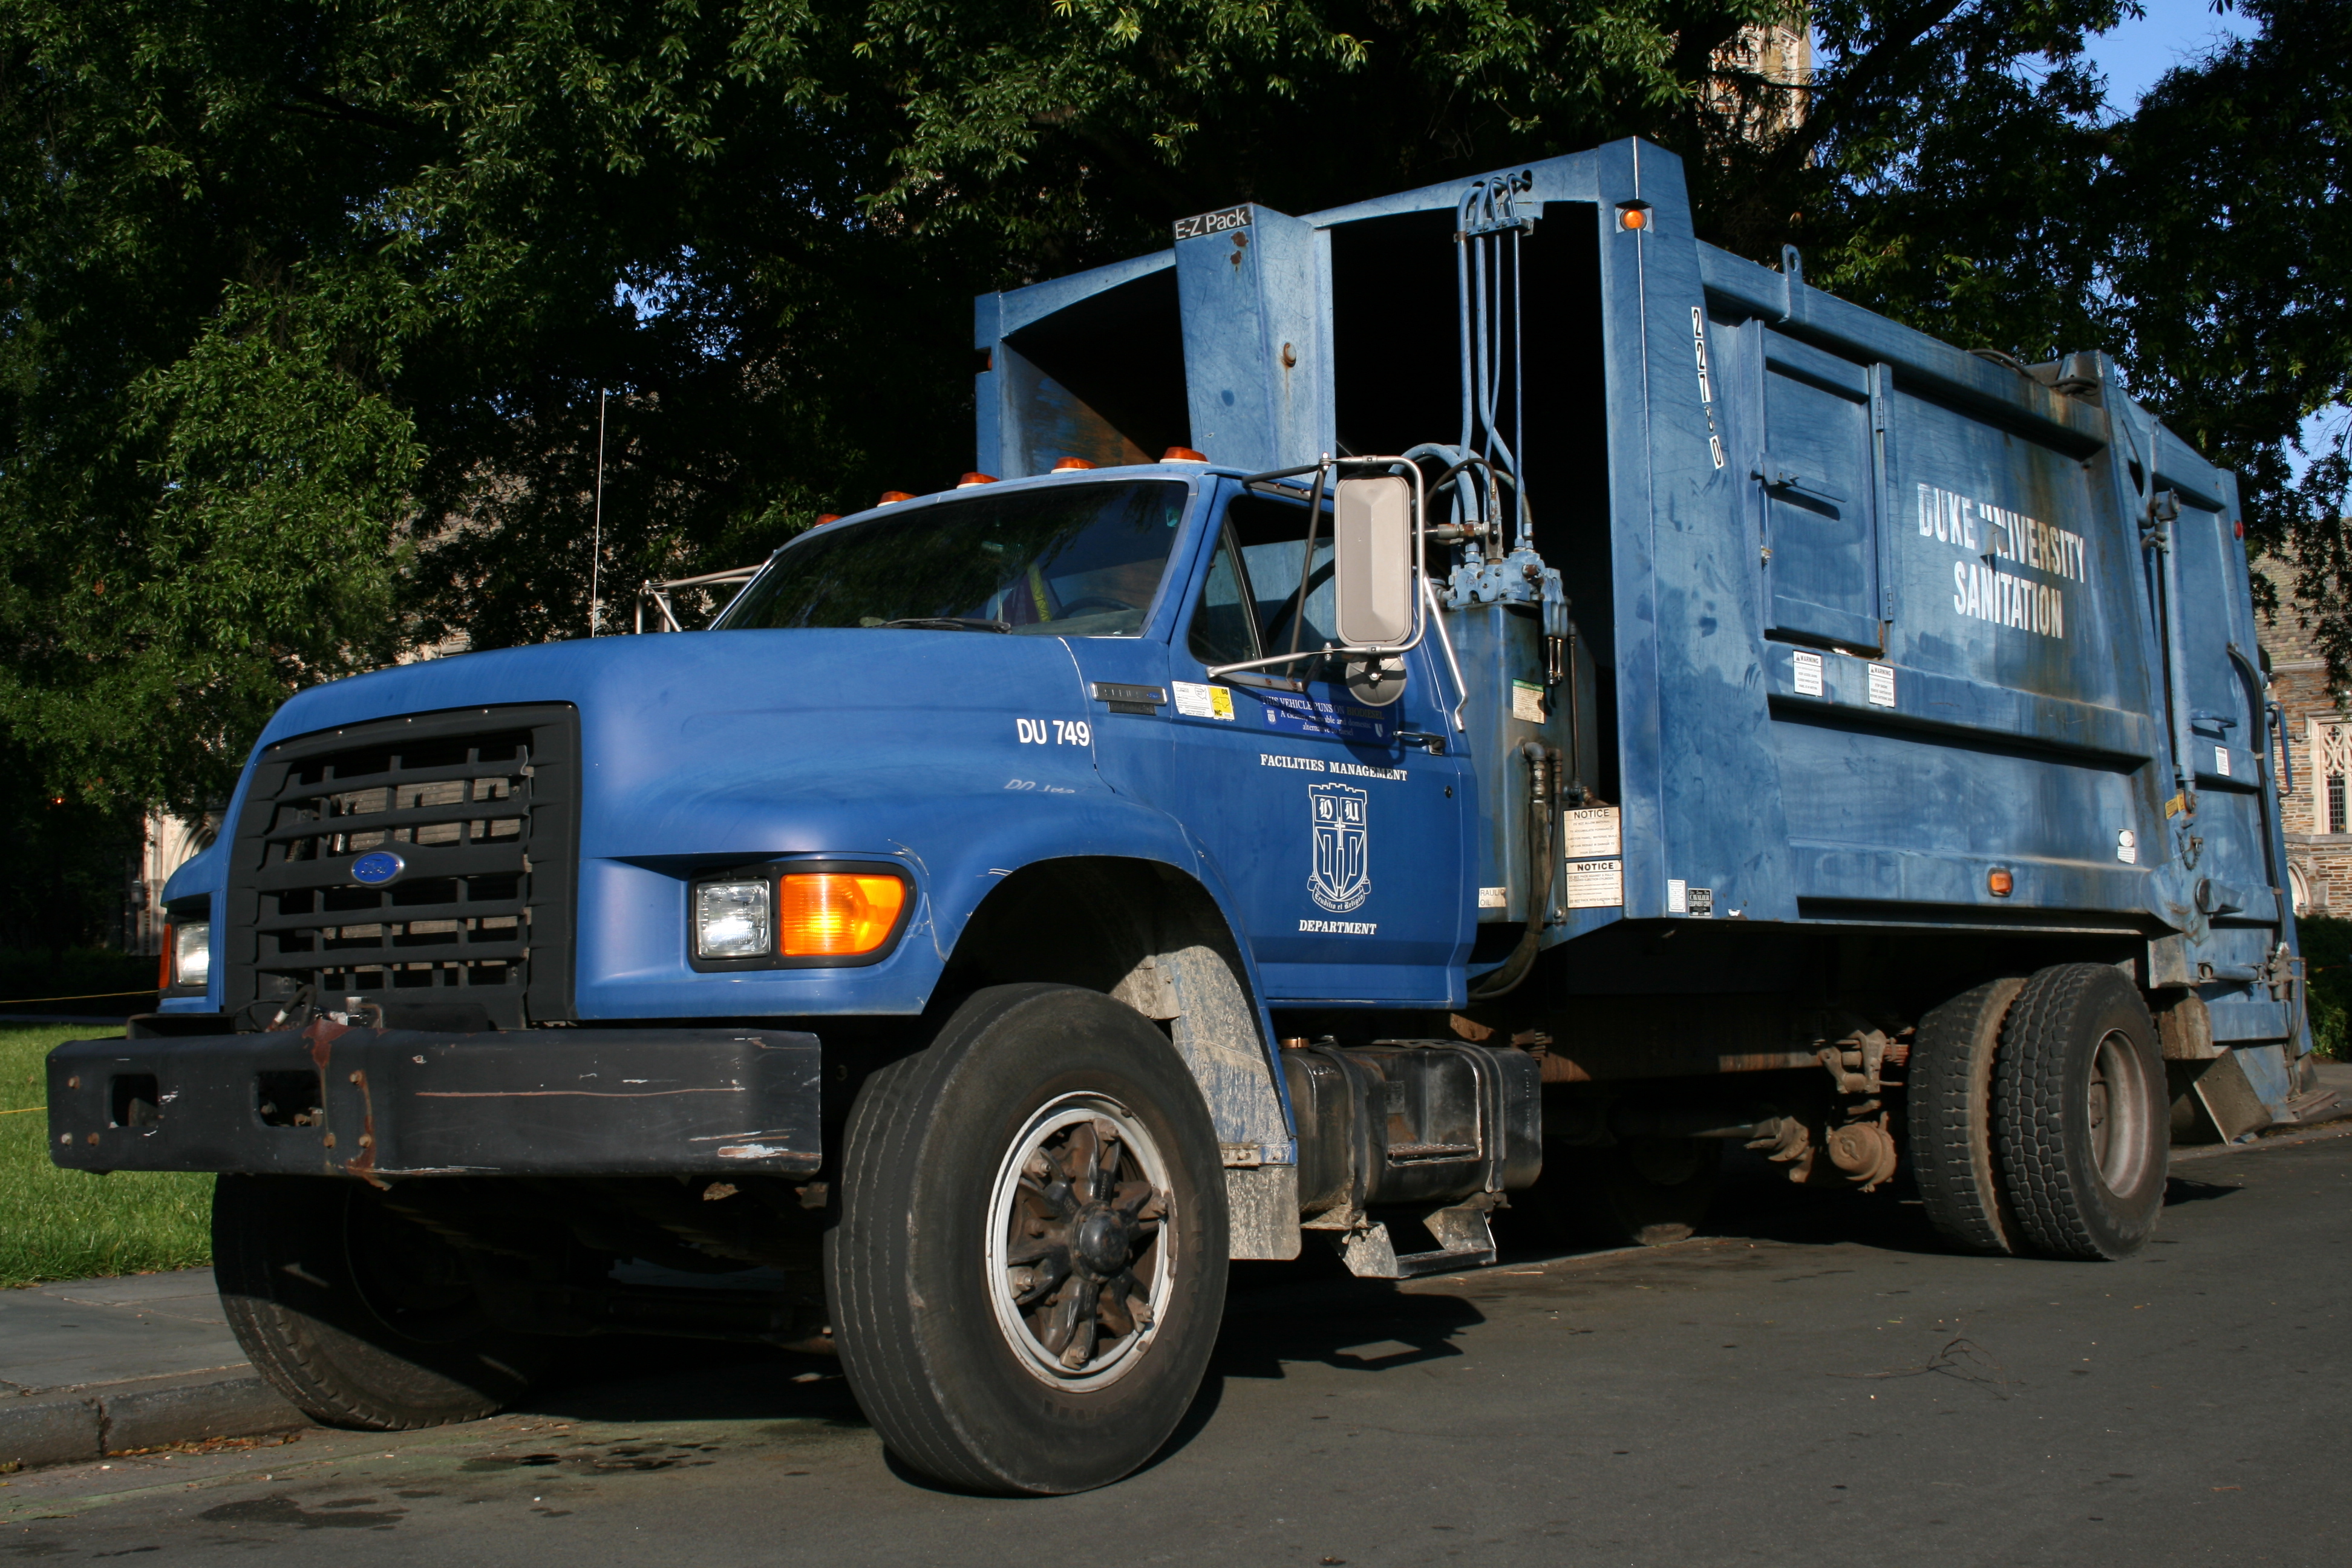 2008-07-24 Duke University sanitation truck